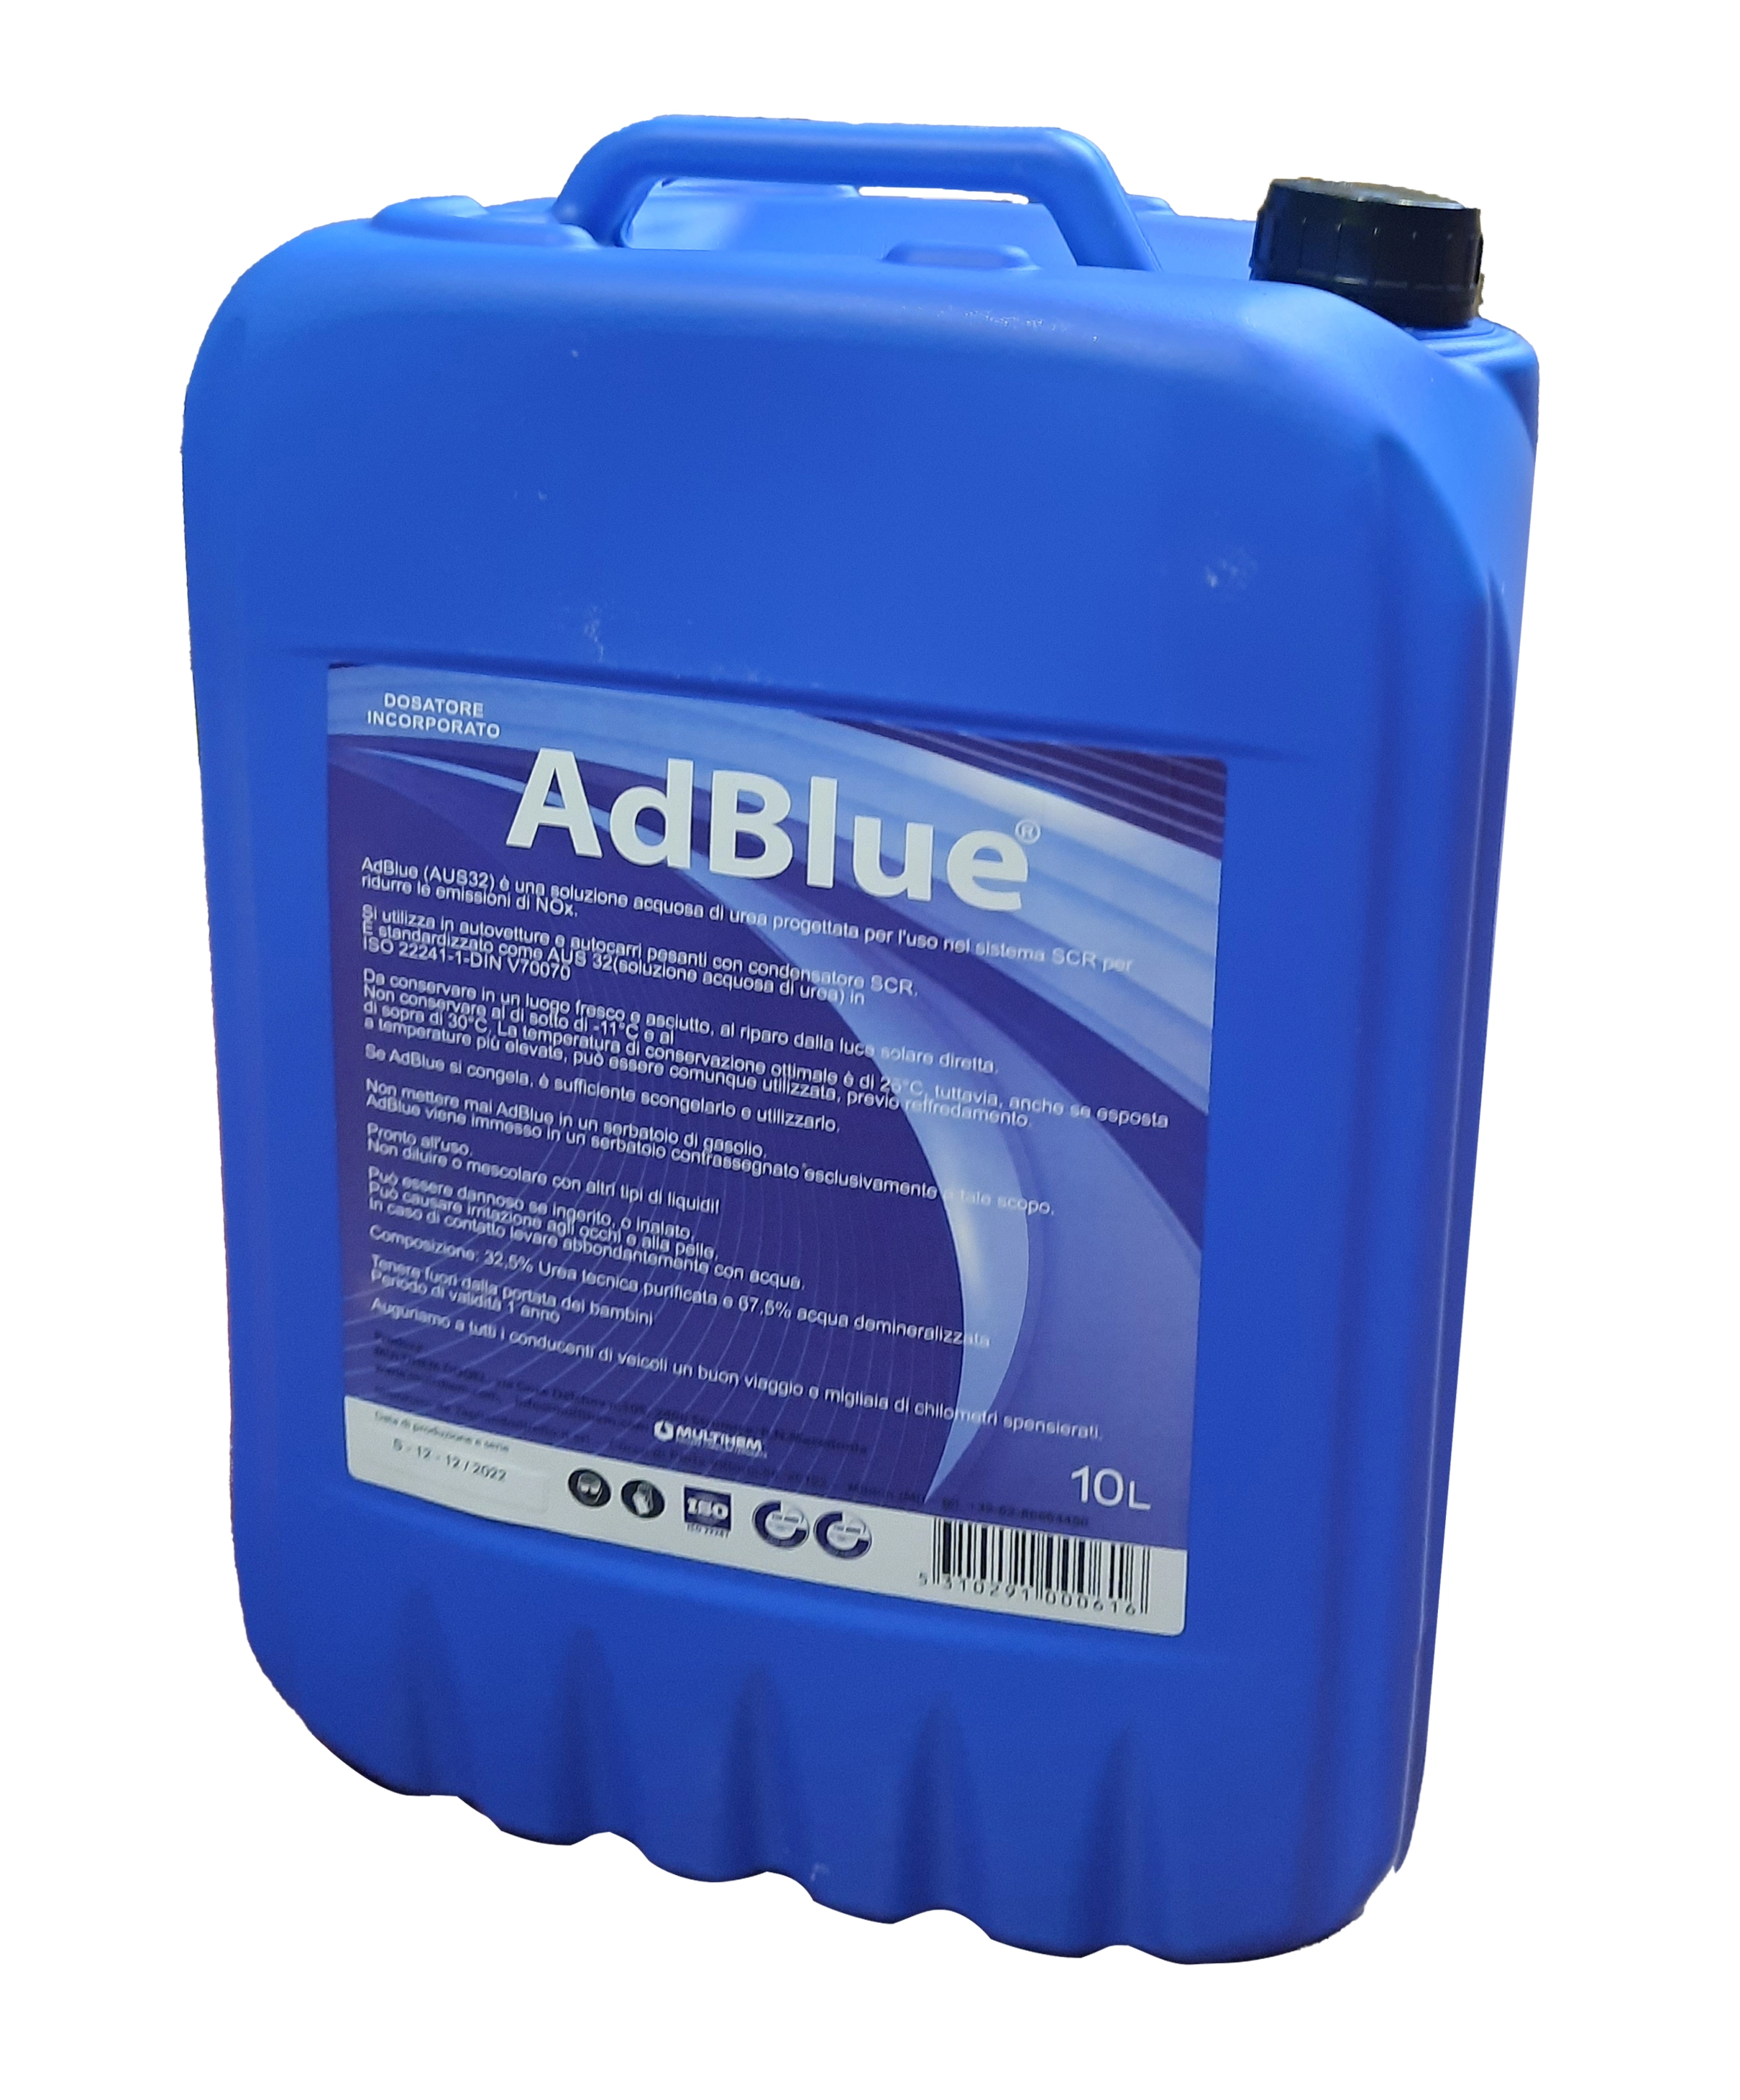 Ad Blue additivo per motori diesel 10 litri